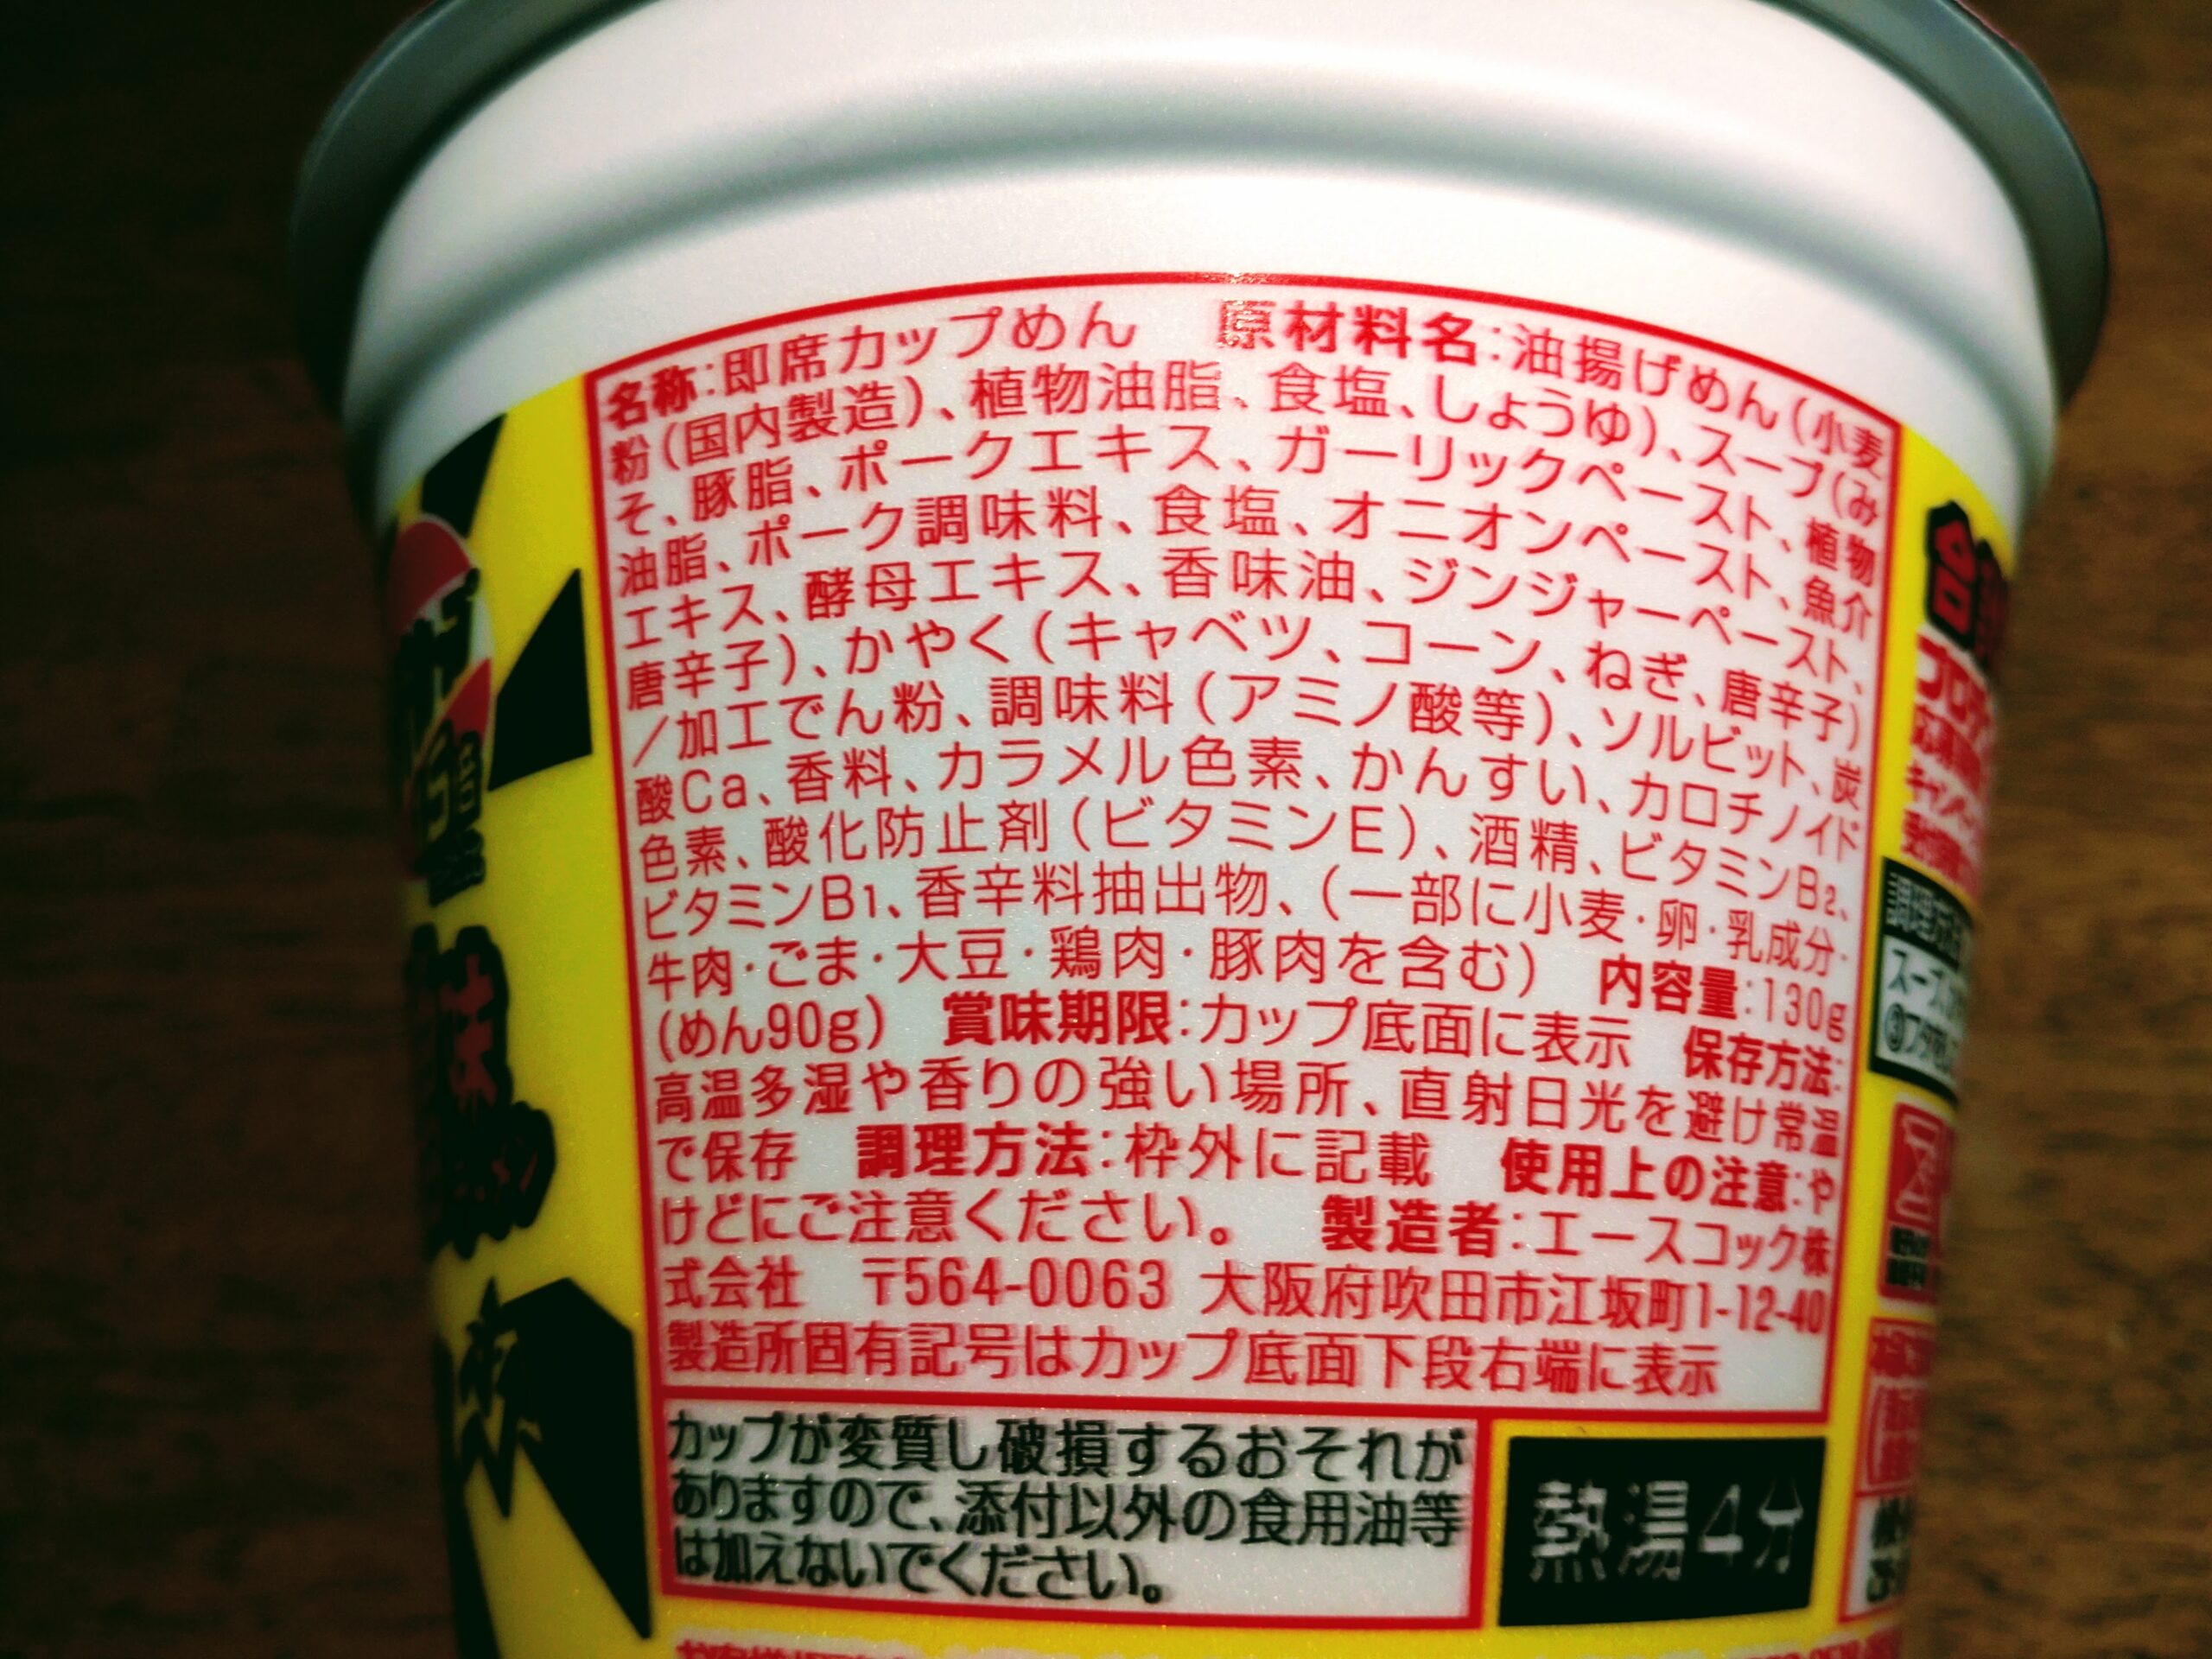 スーパーカップ1.5倍×EXIT ジンジャー豚味噌味ラーメンの原材料名と内容量